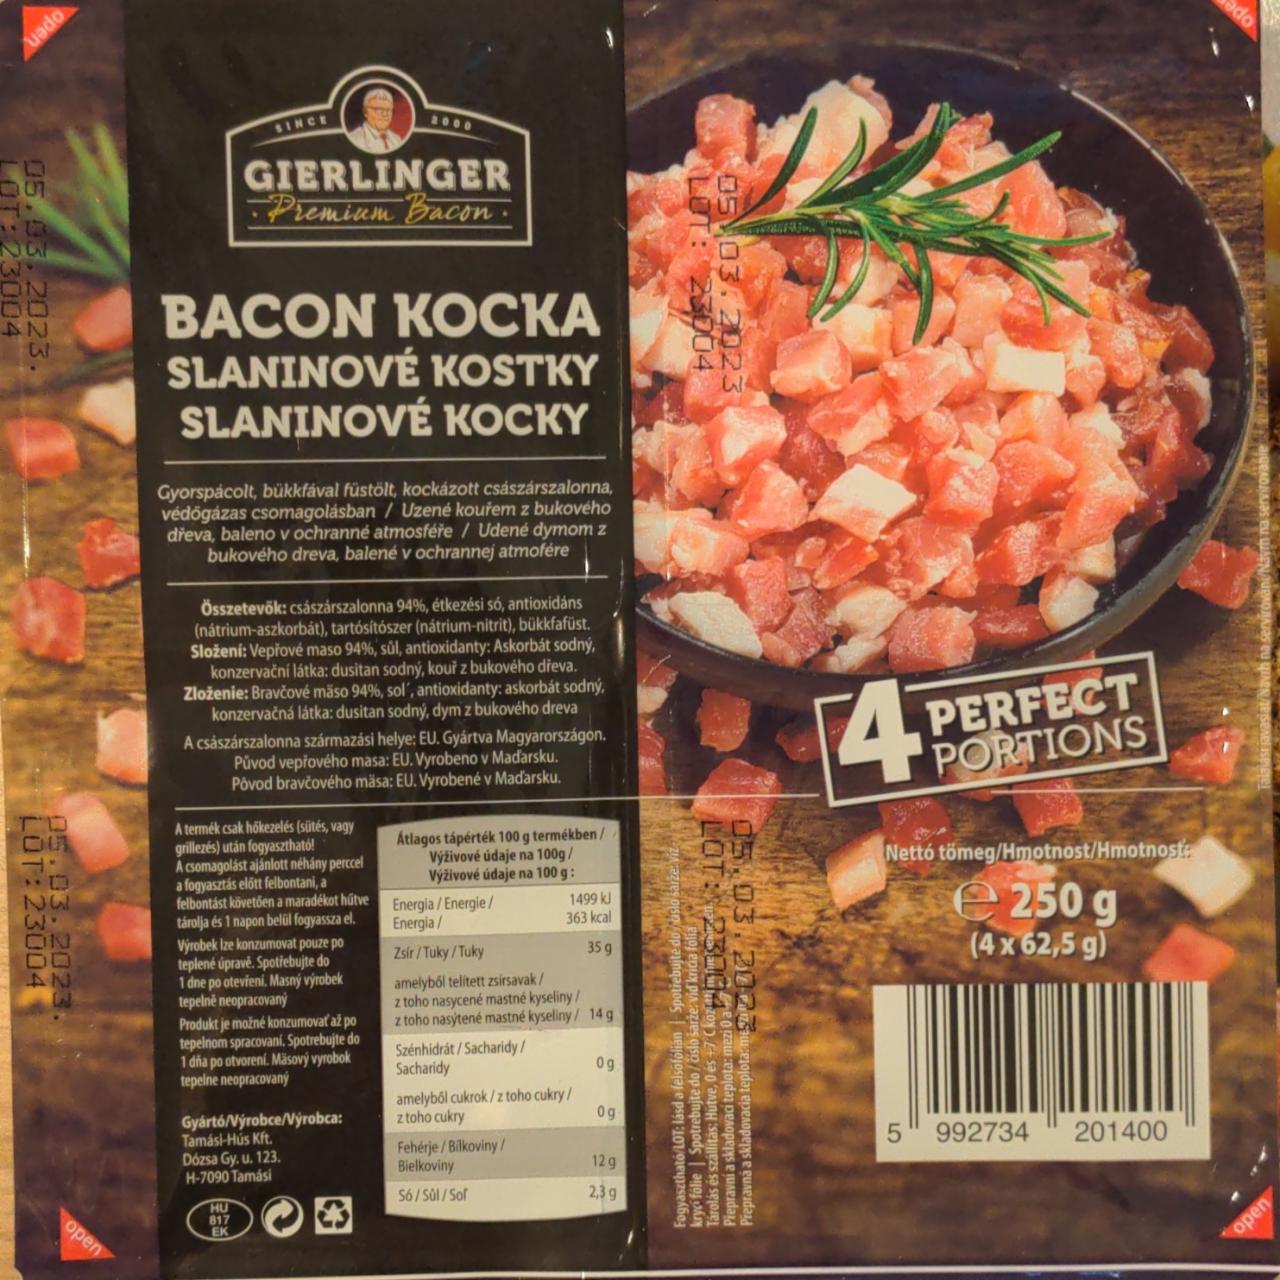 Képek - Gierlinger bacon kocka 4 x 62,5 g (250 g)